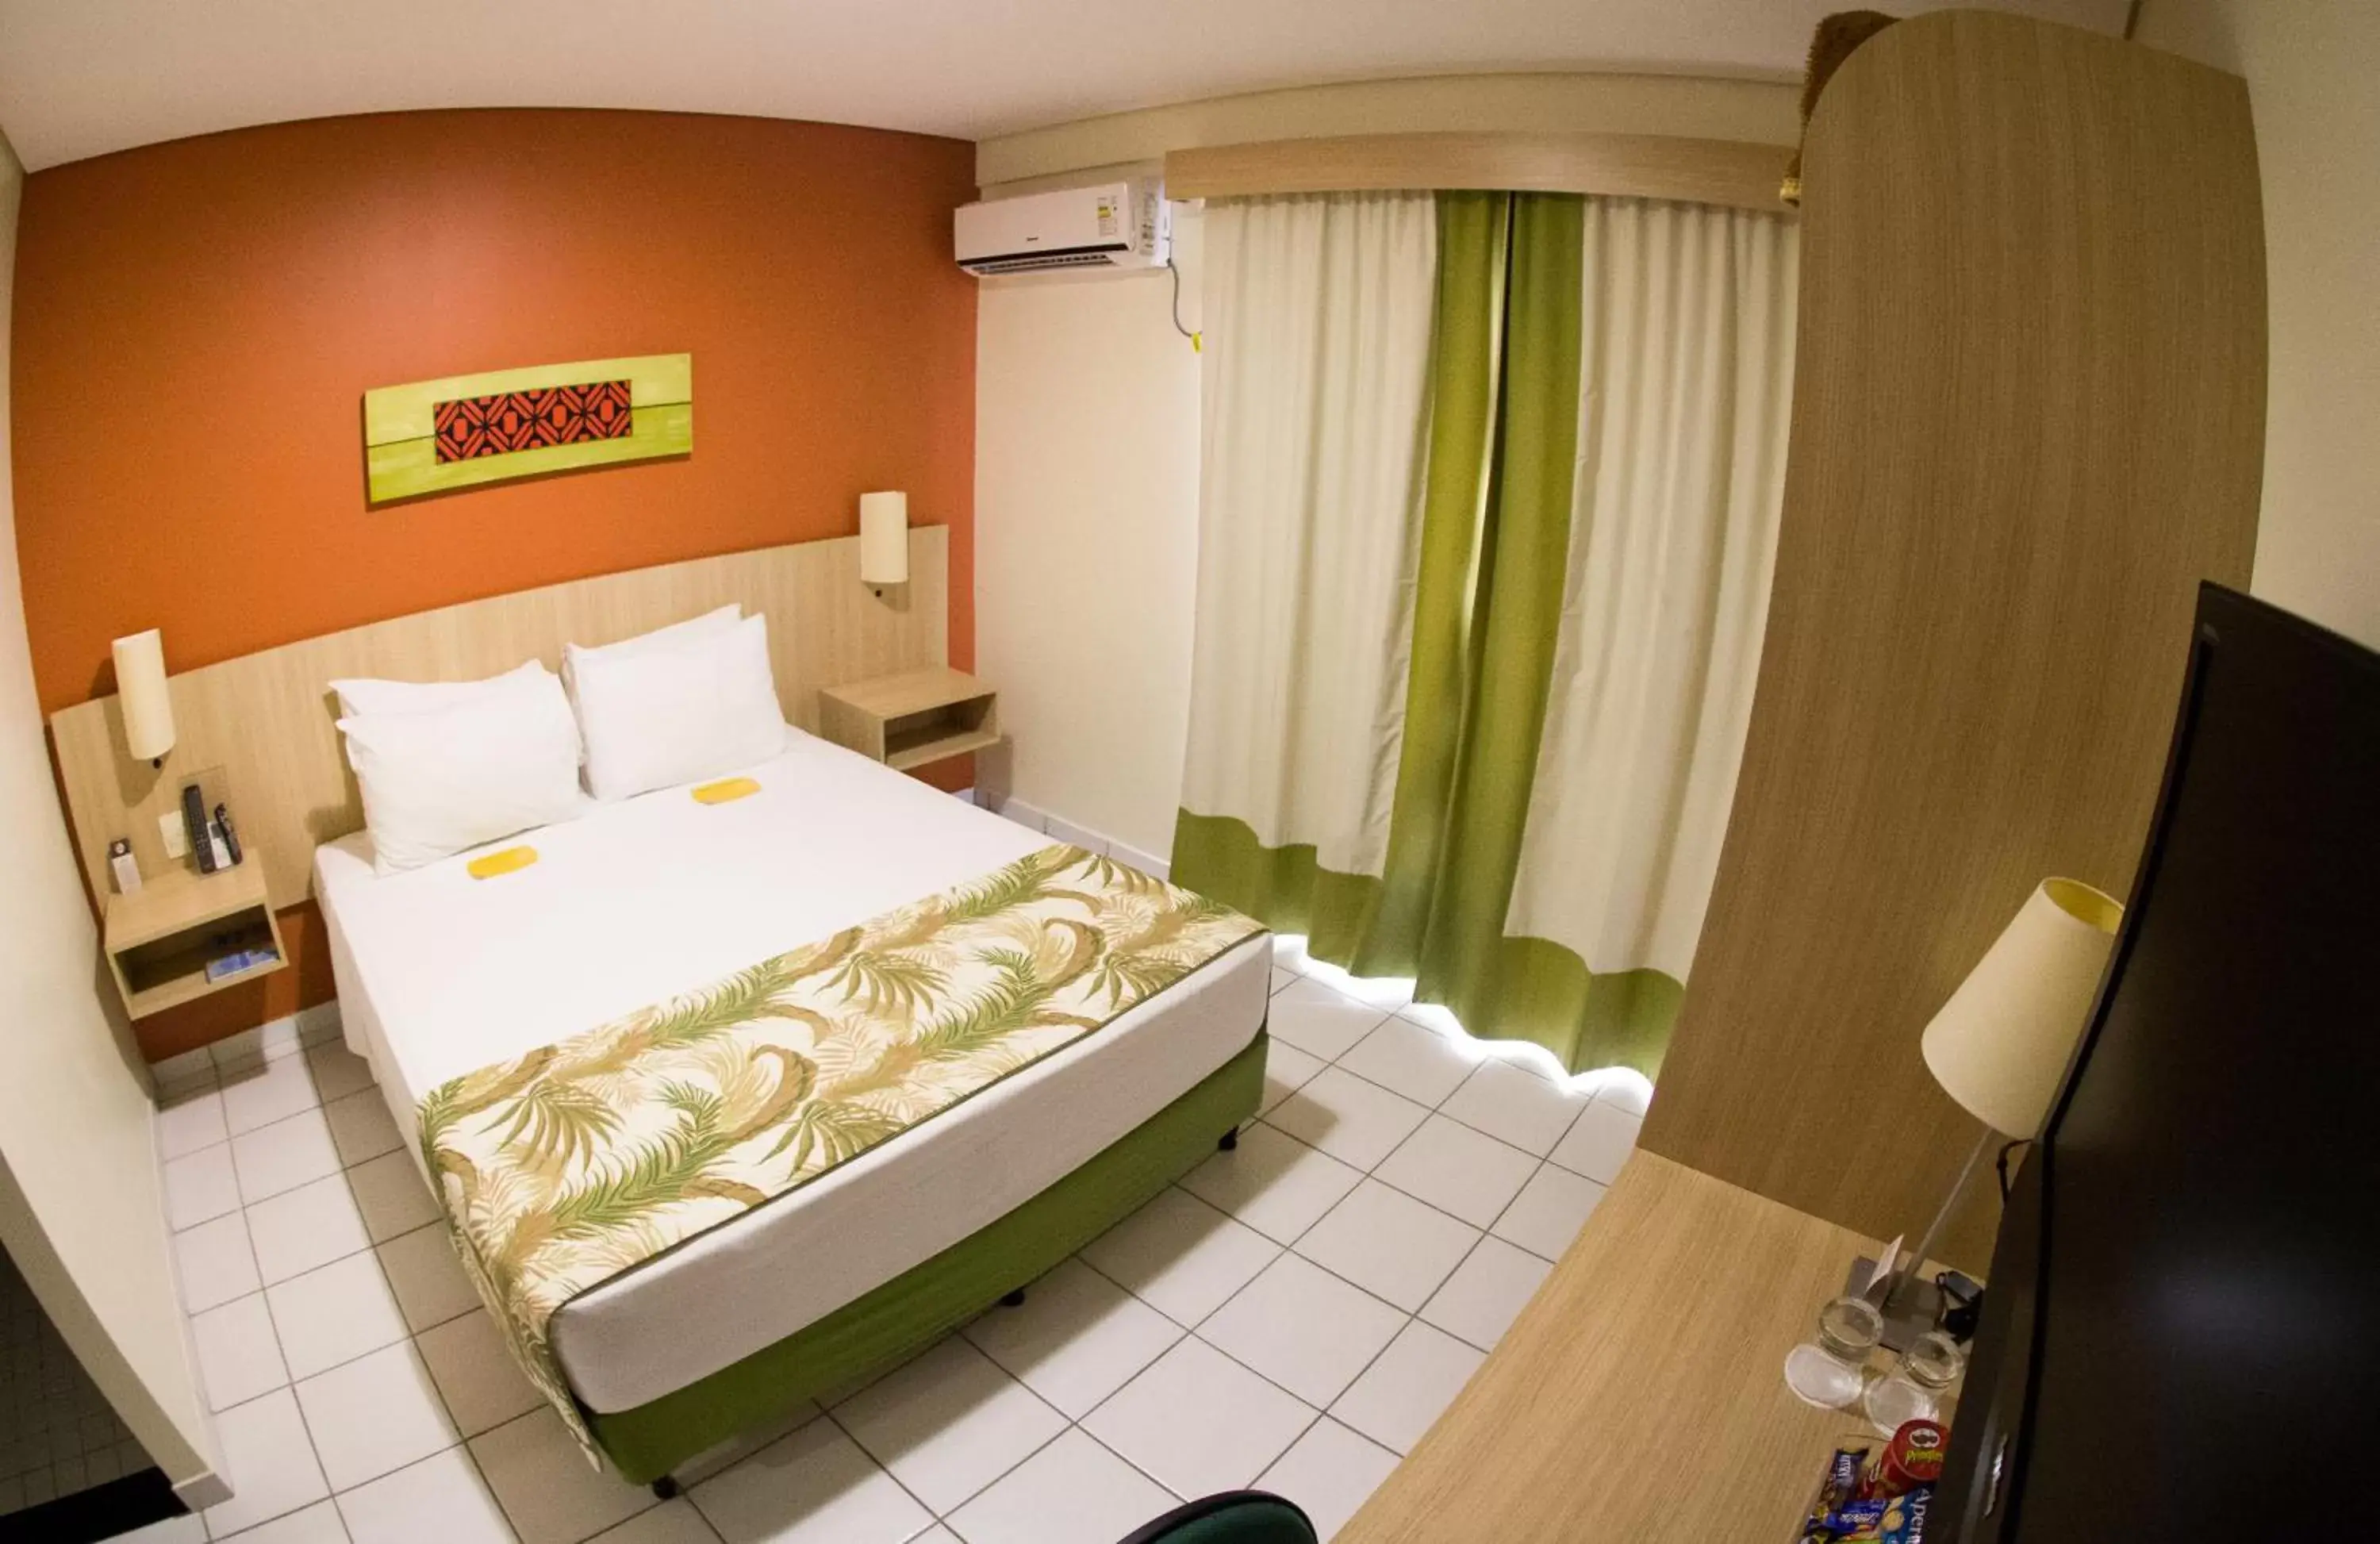 Bedroom, Bed in Sleep Inn Manaus